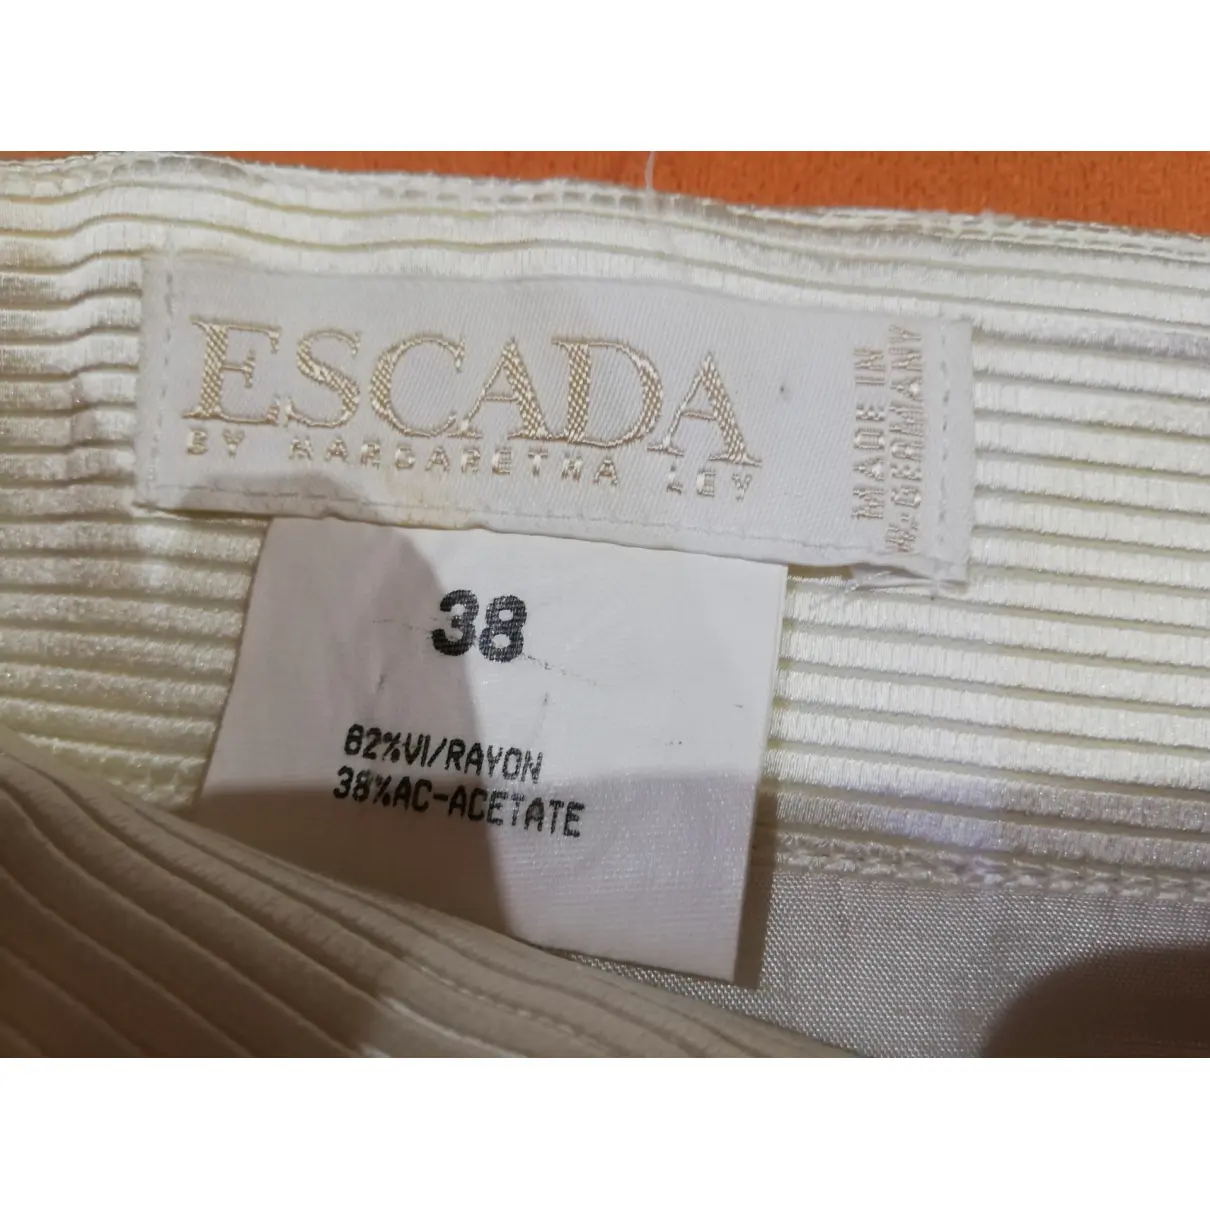 Mid-length skirt Escada